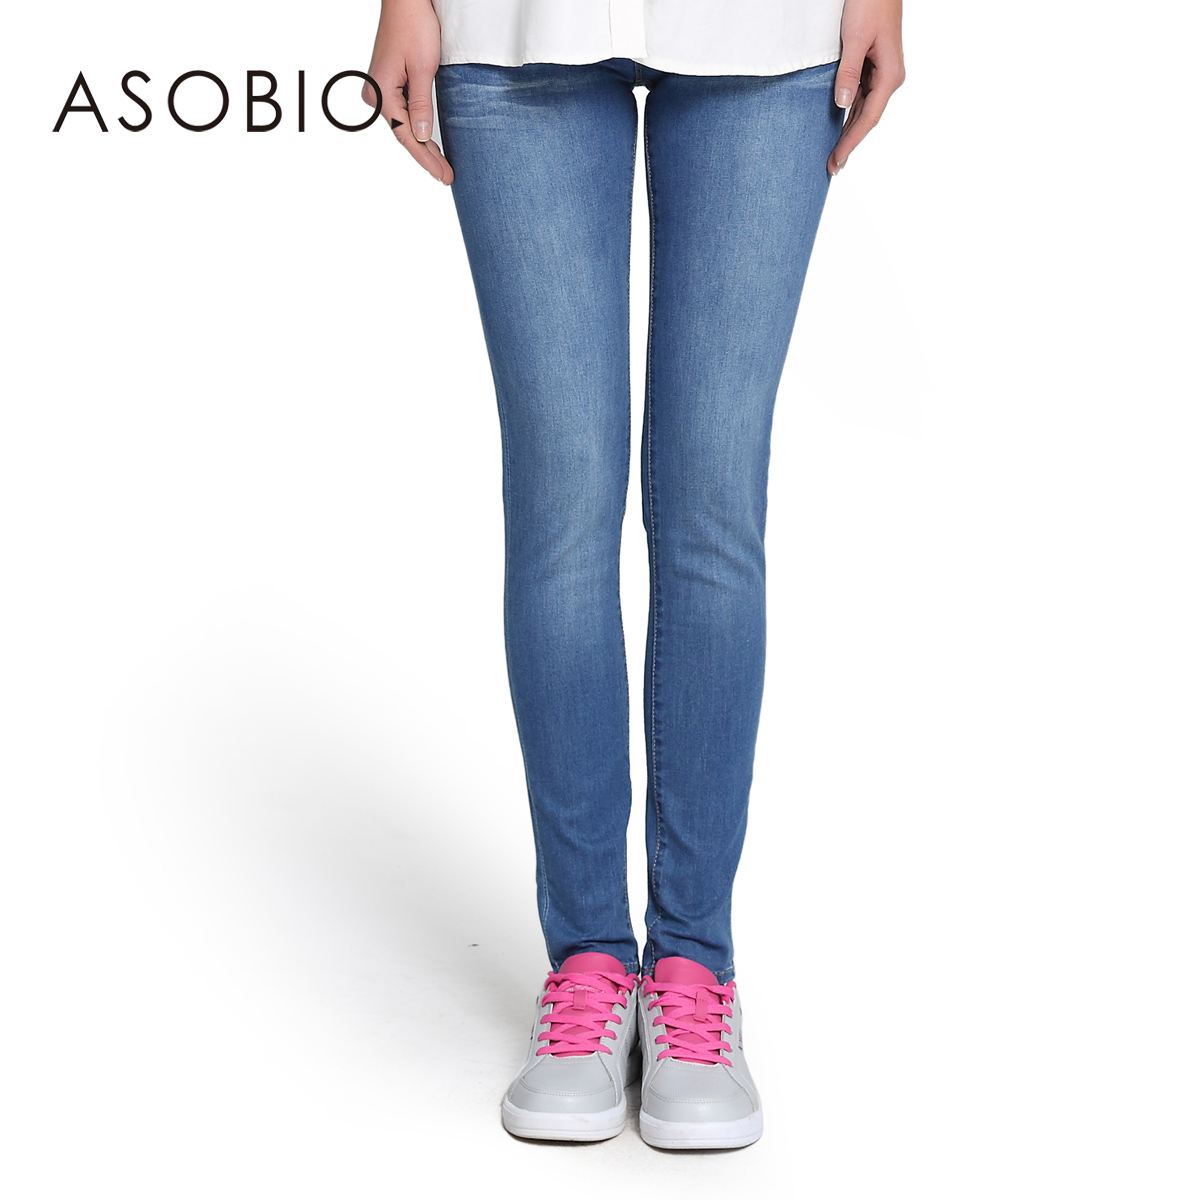 ASOBIO 2014春季新款女装 欧美时尚水洗磨白修身牛仔裤4313632227